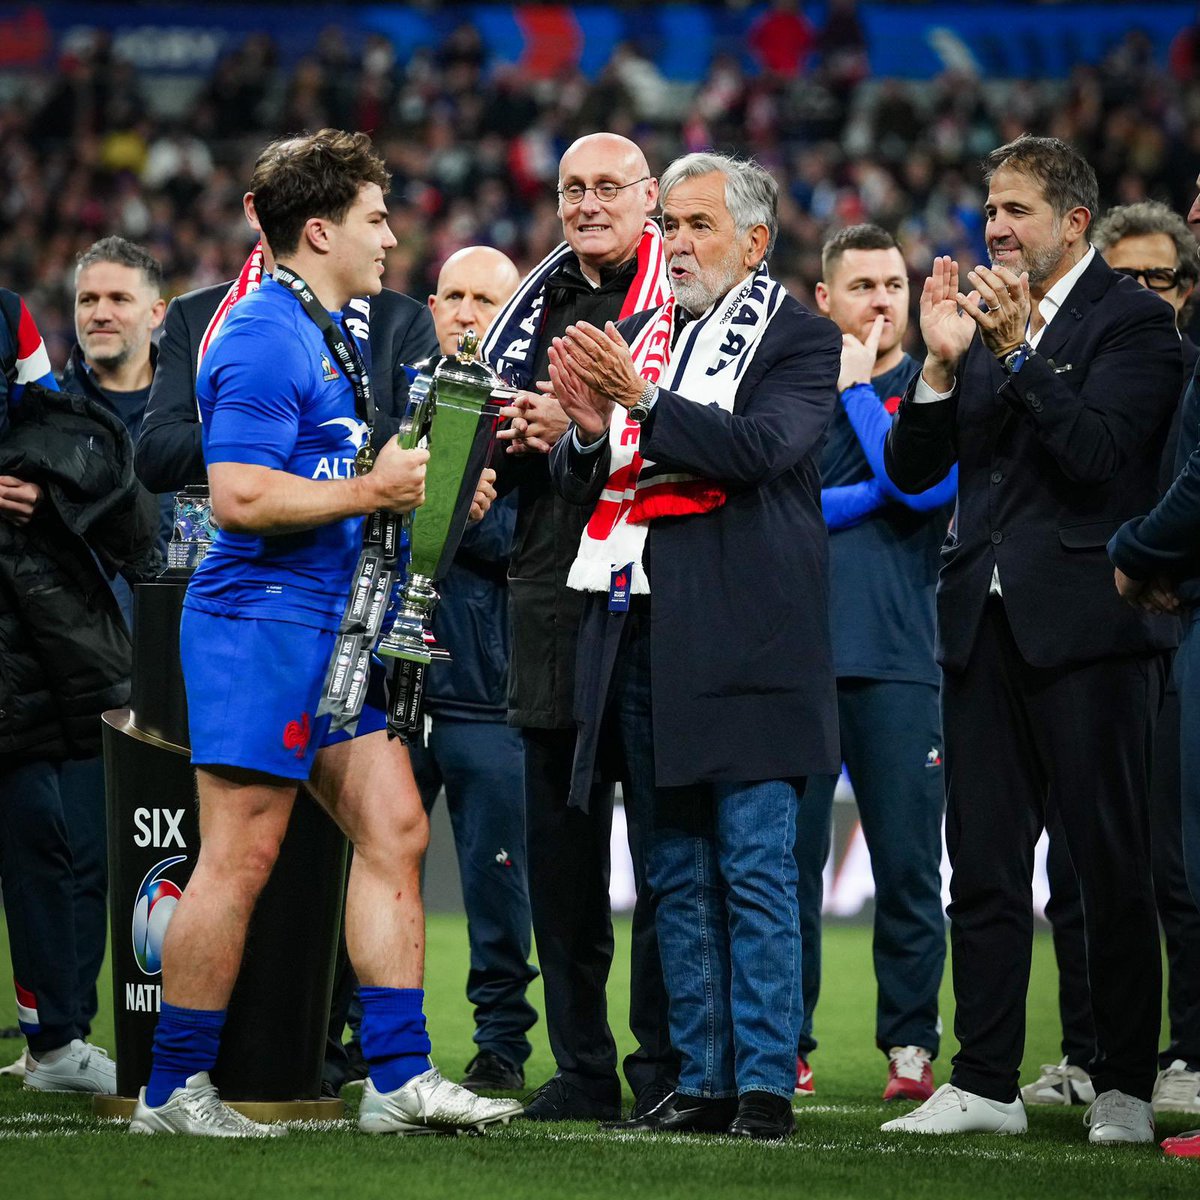 La victoire de tout le rugby français 🇫🇷 facebook.com/10004441129028…